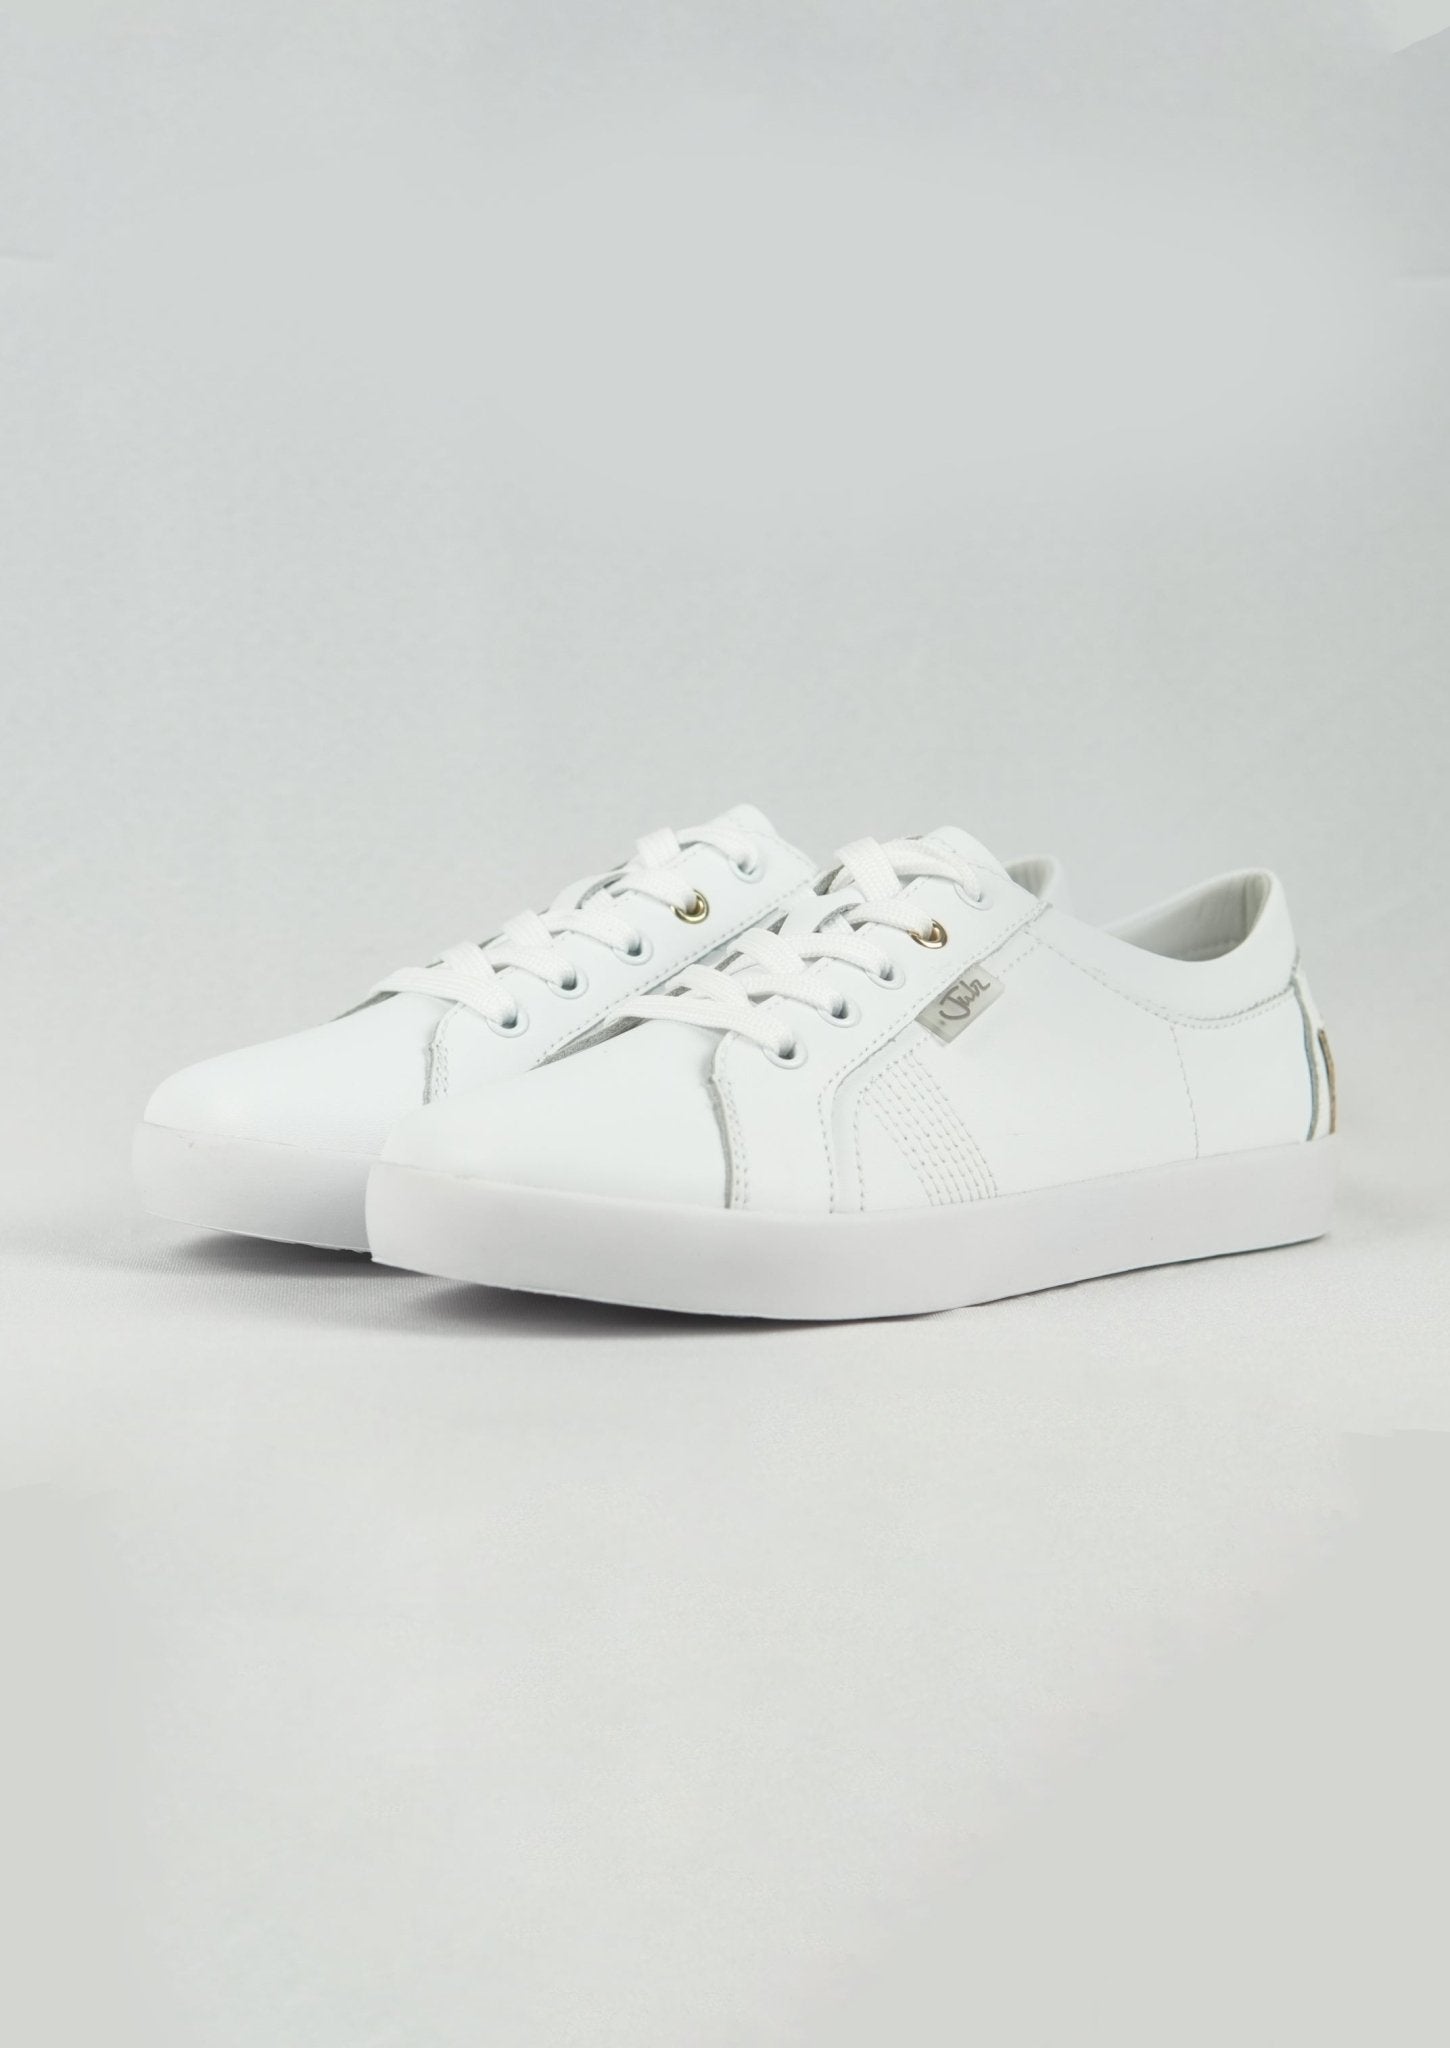 Cammy Sneaker In White - Tribute StoreJulz